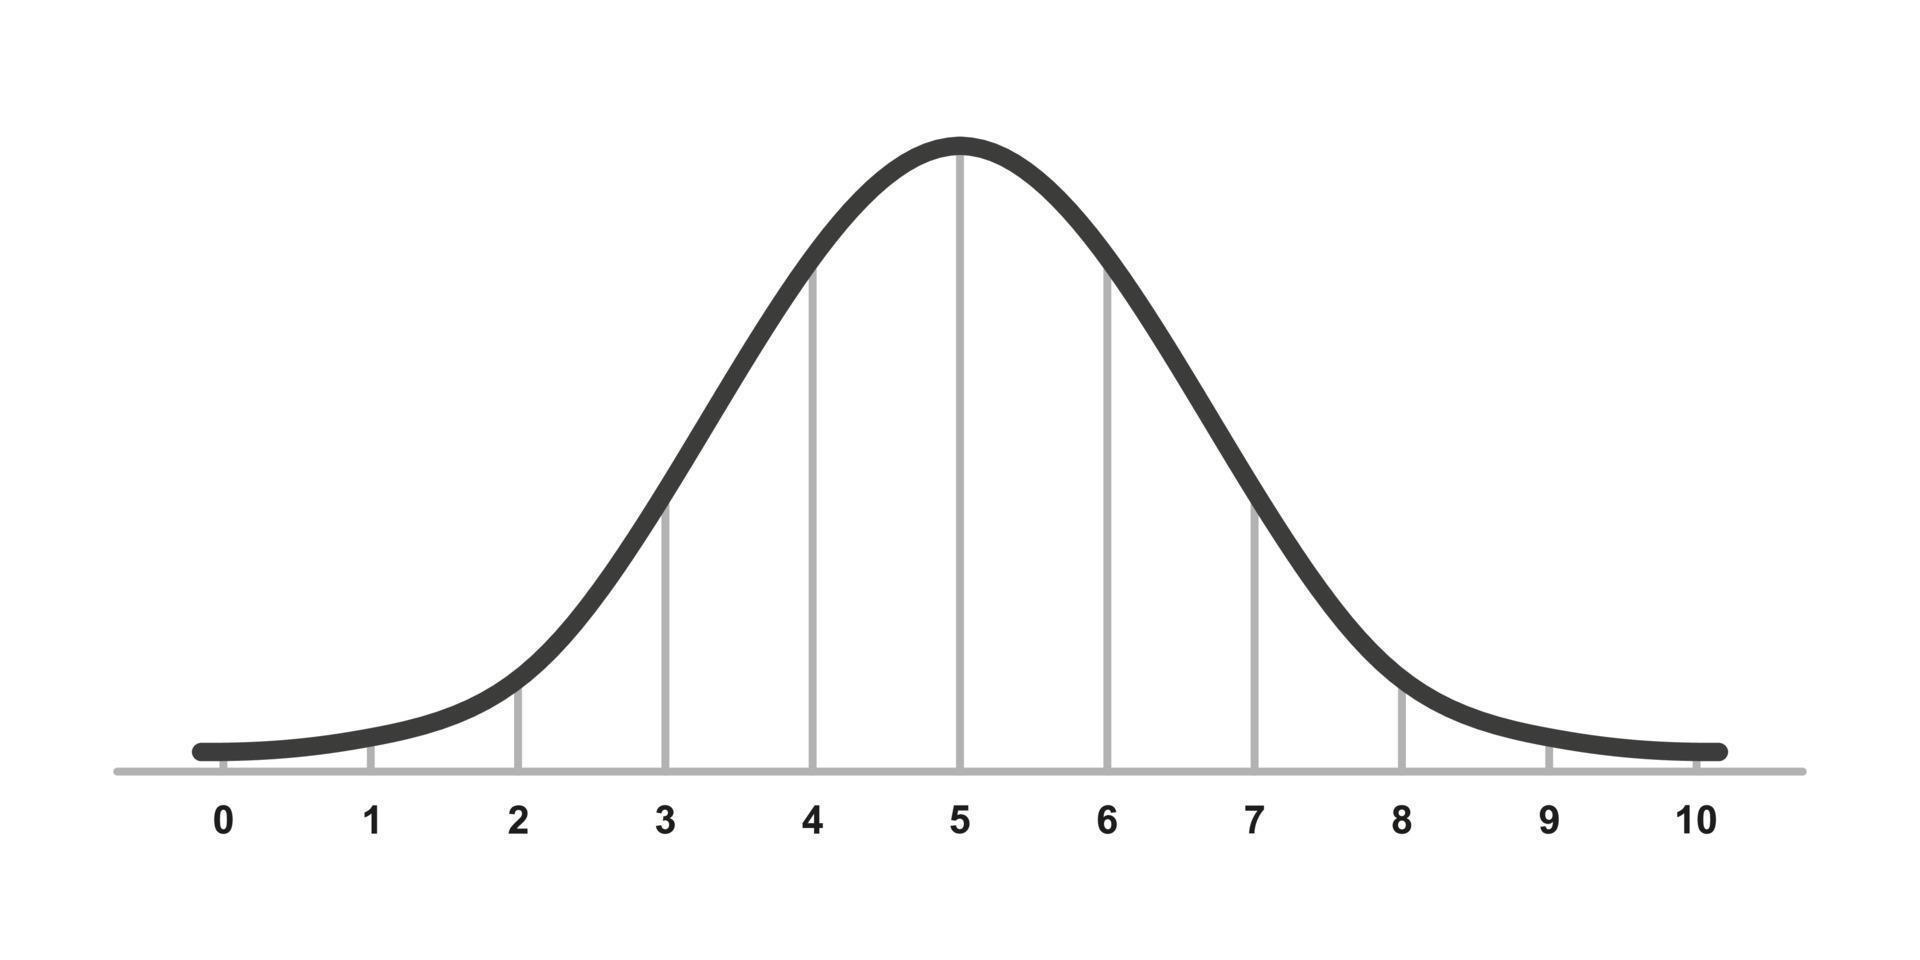 distribuzione gaussiana. distribuzione normale standard. curva del grafico a campana gaussiana. concetto di business e marketing. teoria della probabilità matematica. tratto modificabile. illustrazione vettoriale isolato su sfondo bianco